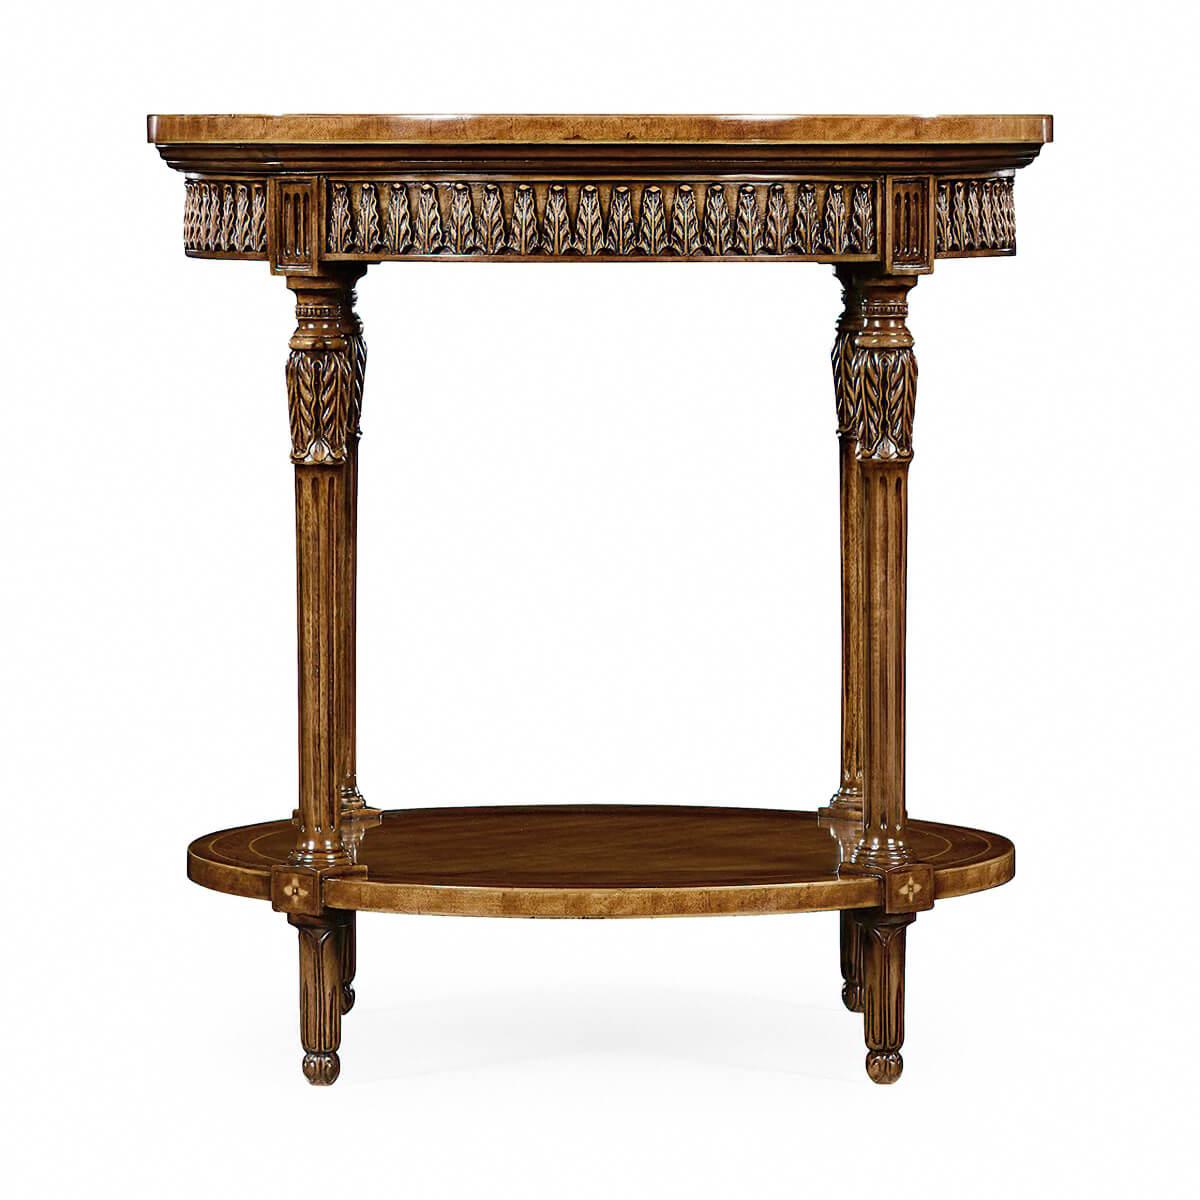 Table d'appoint ronde de style Louis XVI avec plateau marqueté à bandes croisées, tablier à feuilles d'acanthe sculptées à la main et pieds tournés, effilés et cannelés enveloppés d'acanthe. Avec une base d'étagère incrustée.

Dimensions : 24